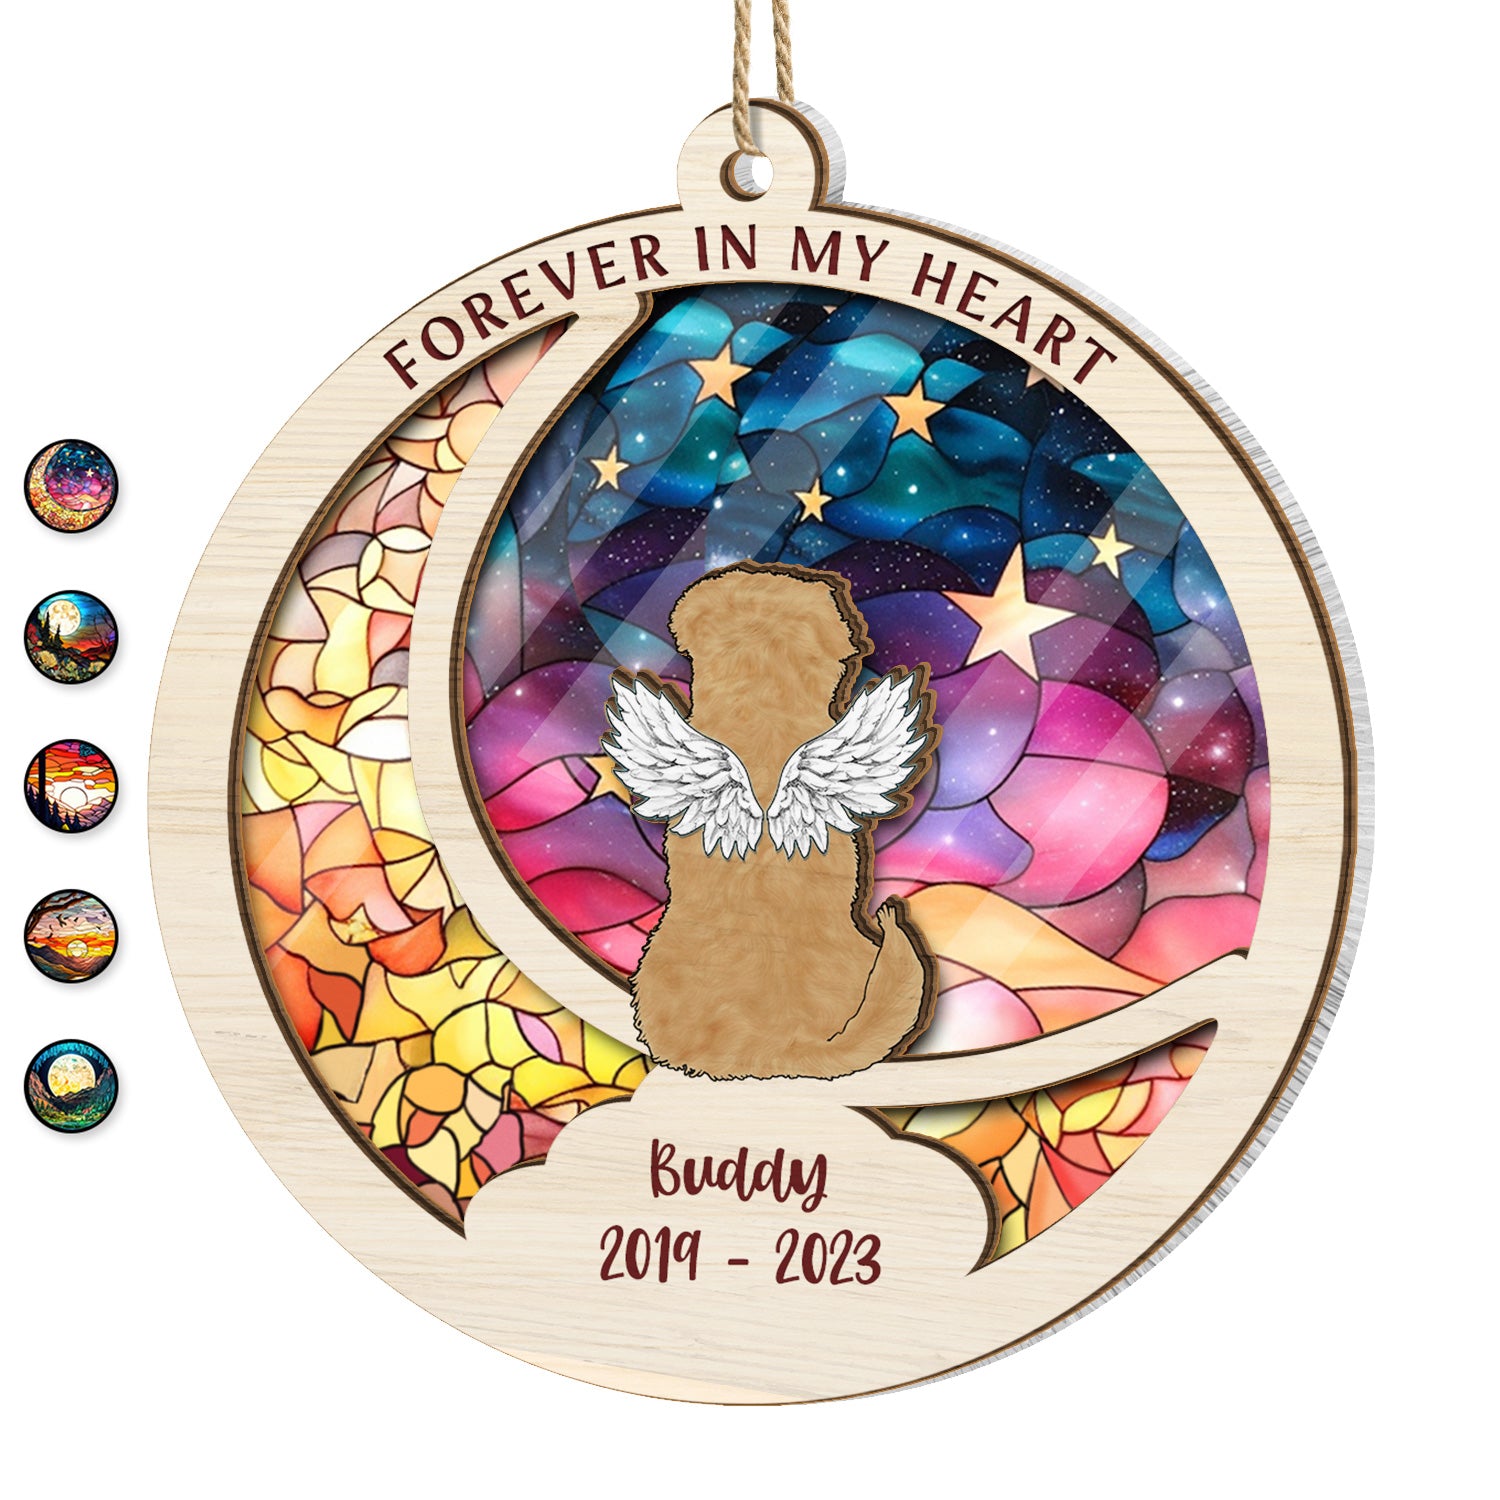 Fishing In Heaven - Memorial Gift - Personalized Custom Circle Ceramic -  Wander Prints™